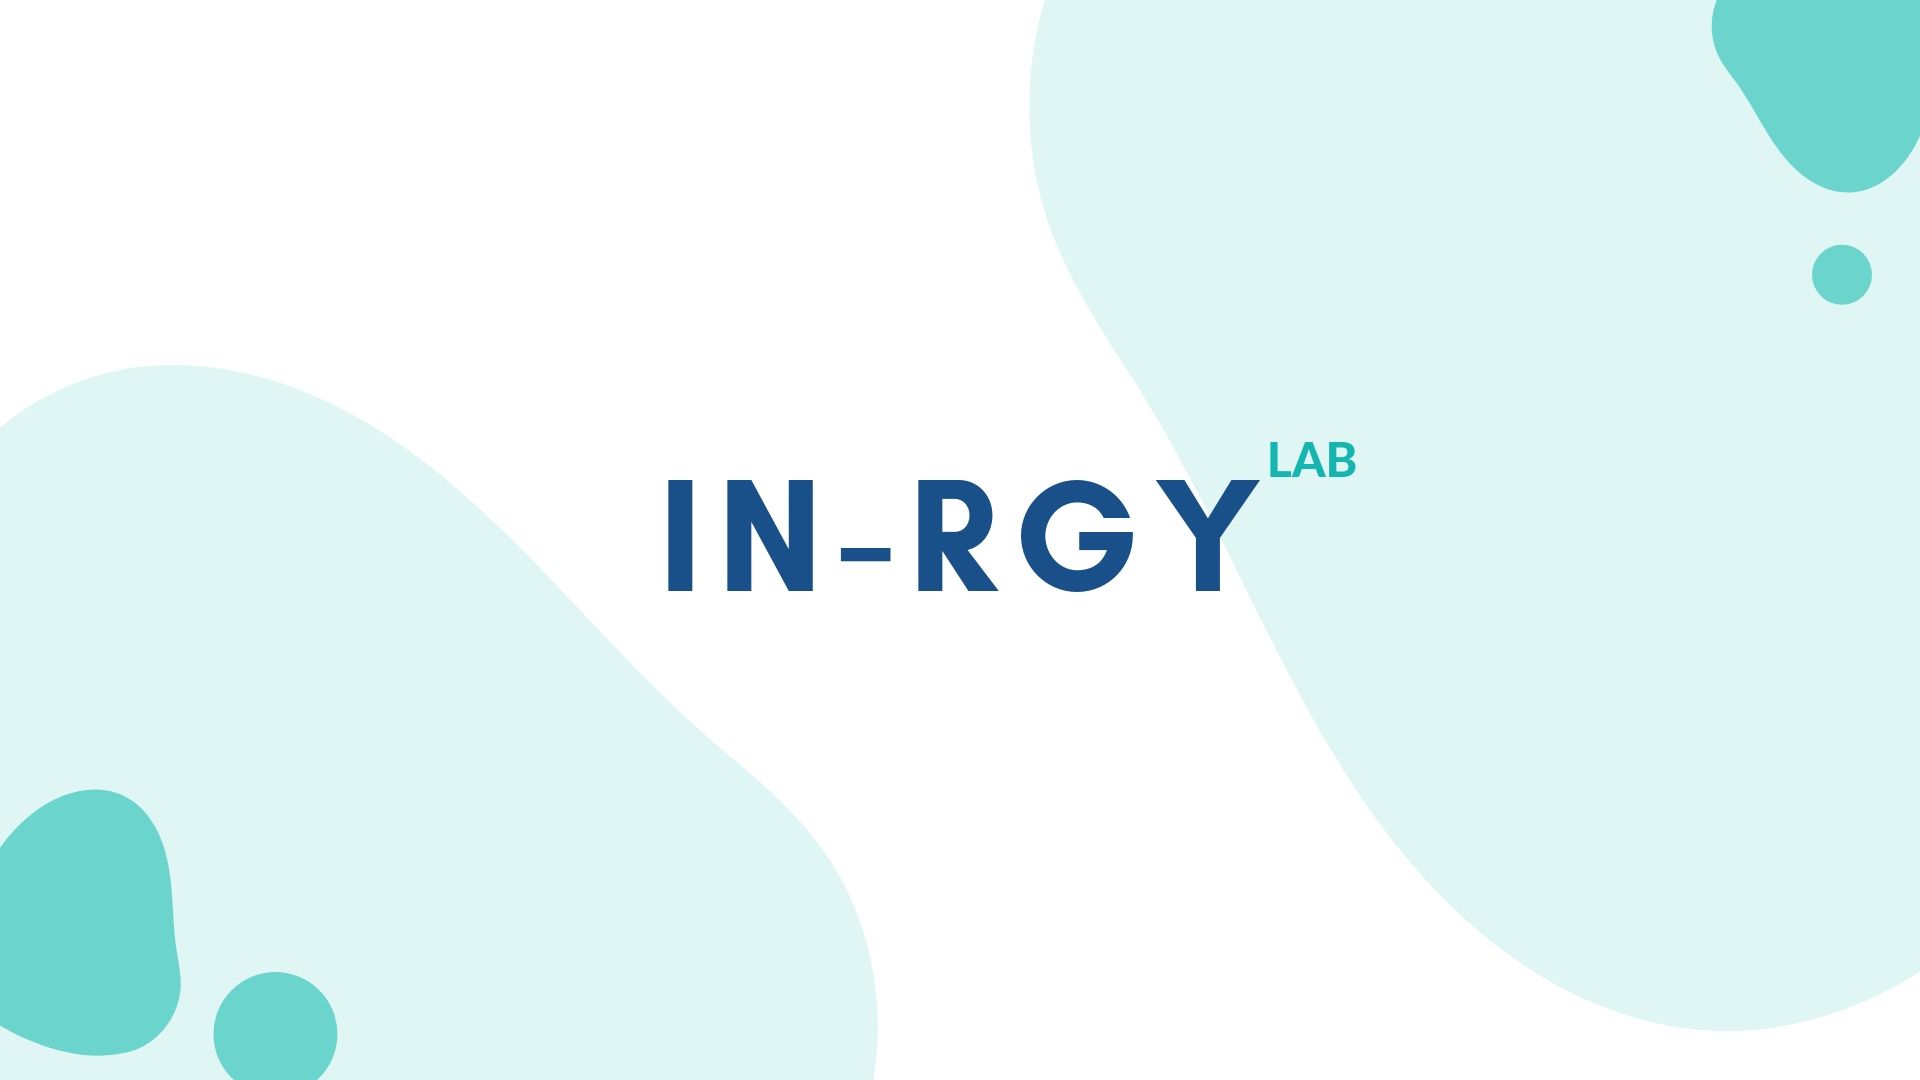 IN-RGY Lab développe des outils sur-mesure pour compléter les solutions RH que vous avez déjà à disposition. Labor IN-SIGHT vous permet d'optimiser la gestion de temps de vos employés et de mieux gérer vos projets en interne. 